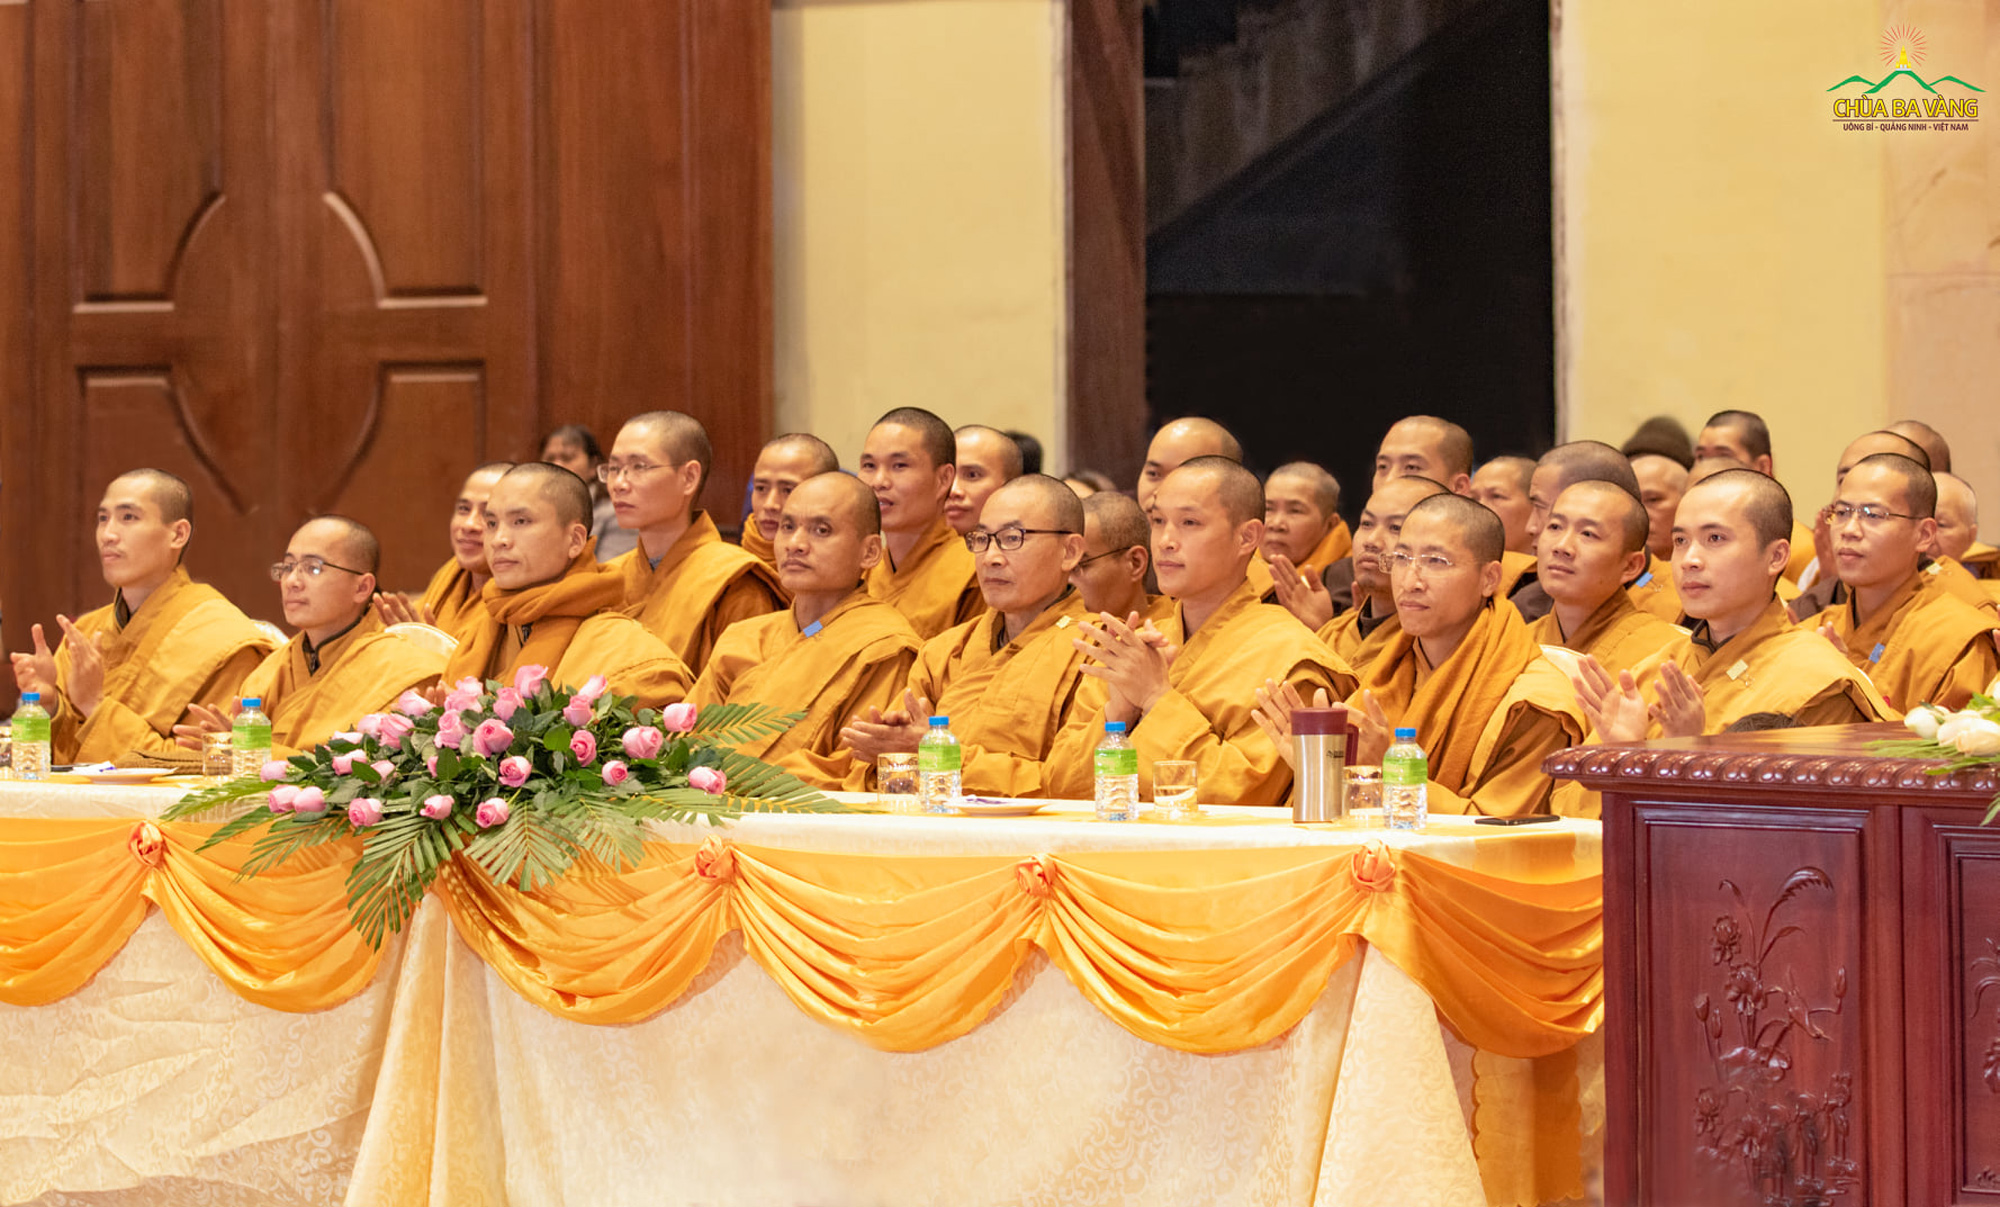 Chư Tăng Ni chùa Ba Vàng trong đêm “Ca mừng Đức Phật thành đạo”